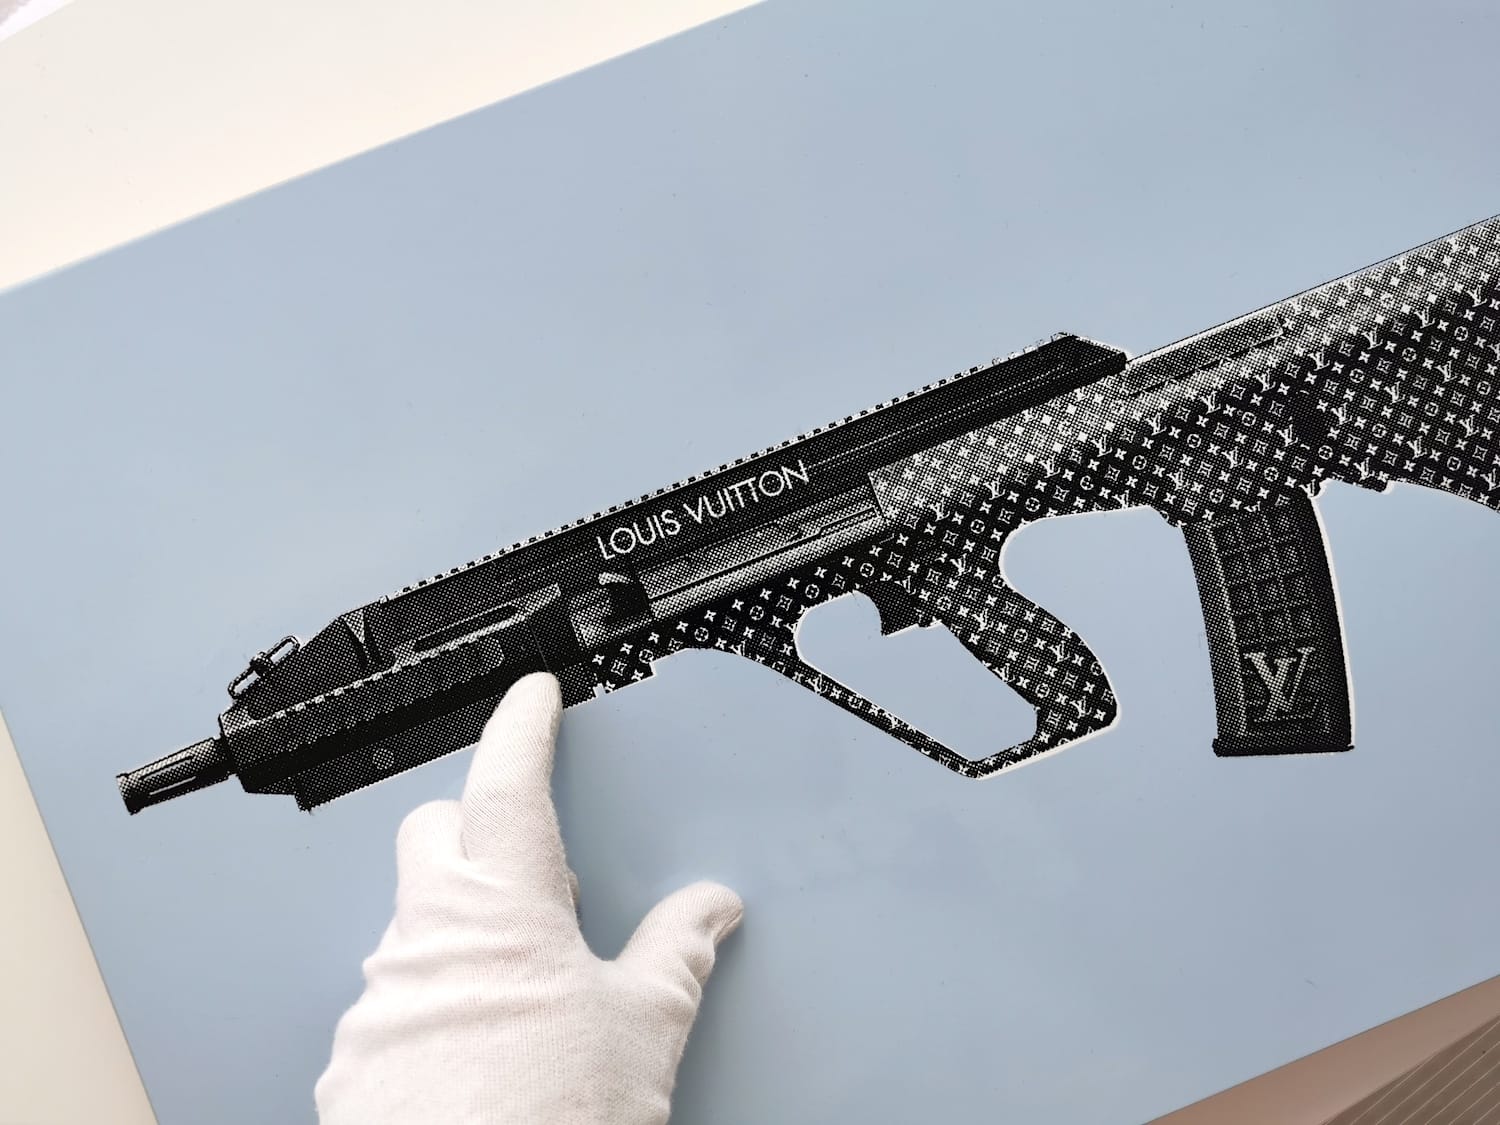 Louis Vuitton Gun Yoga Mat by Street Art - Pixels